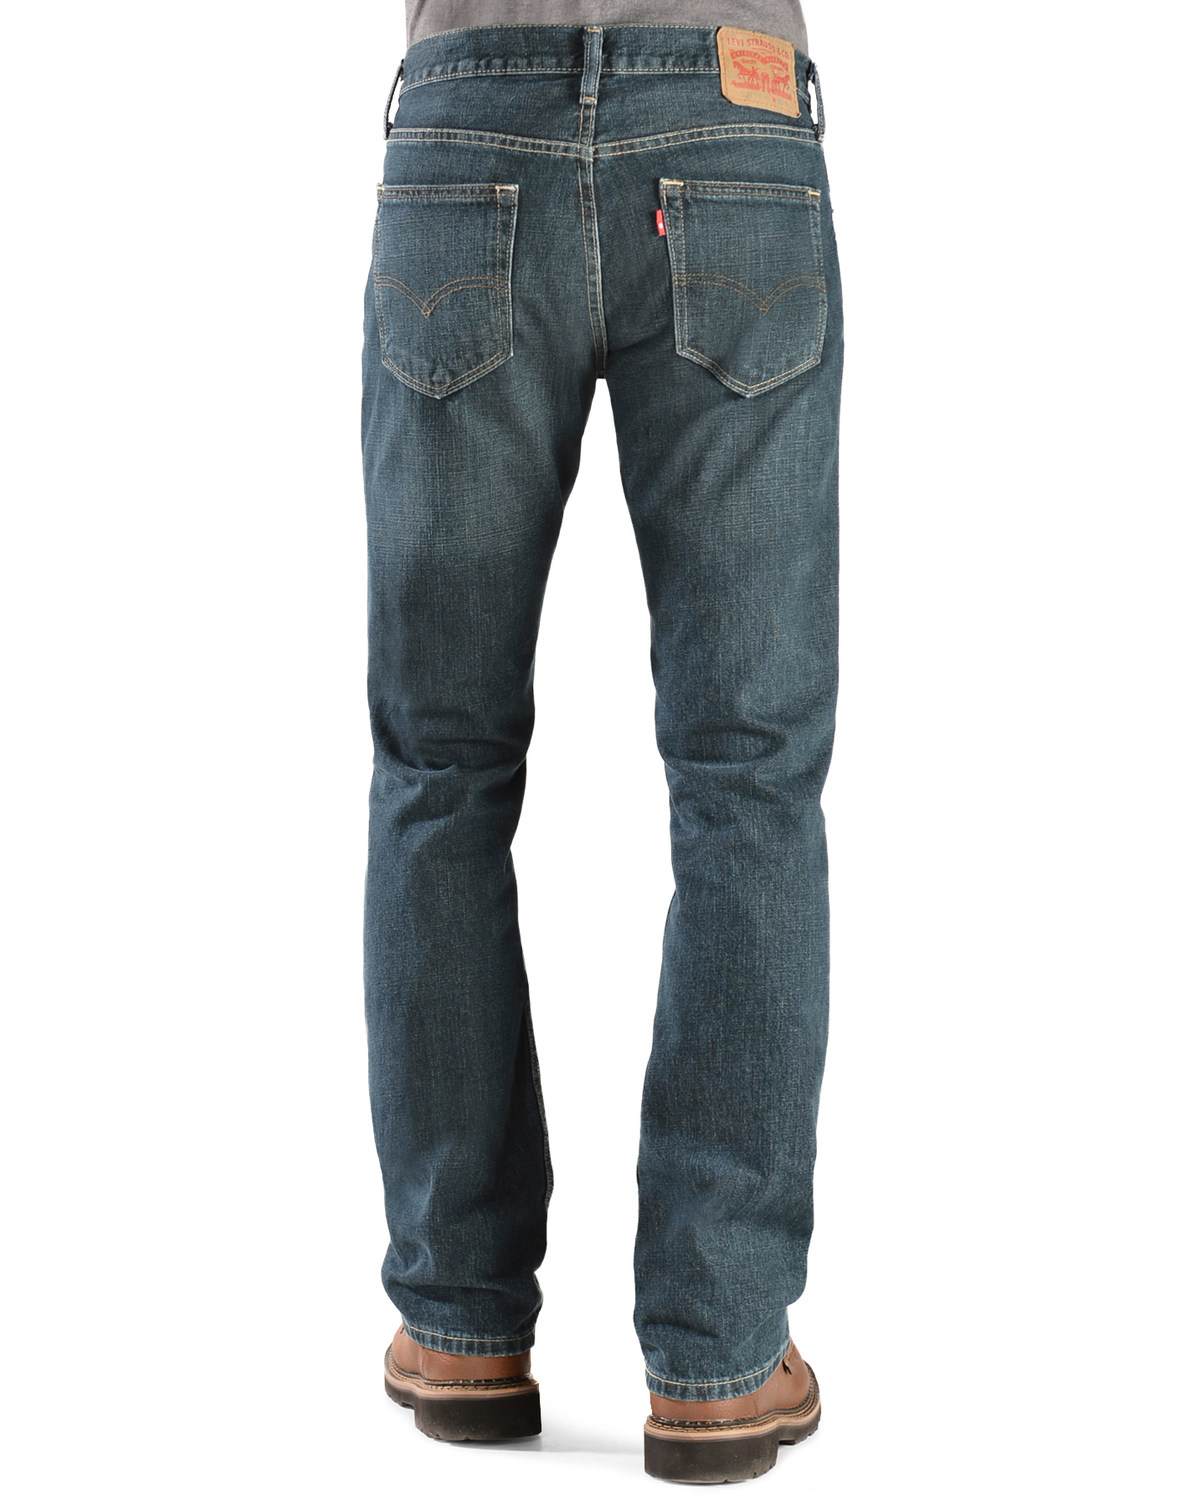 levi's low boot cut 527 jeans